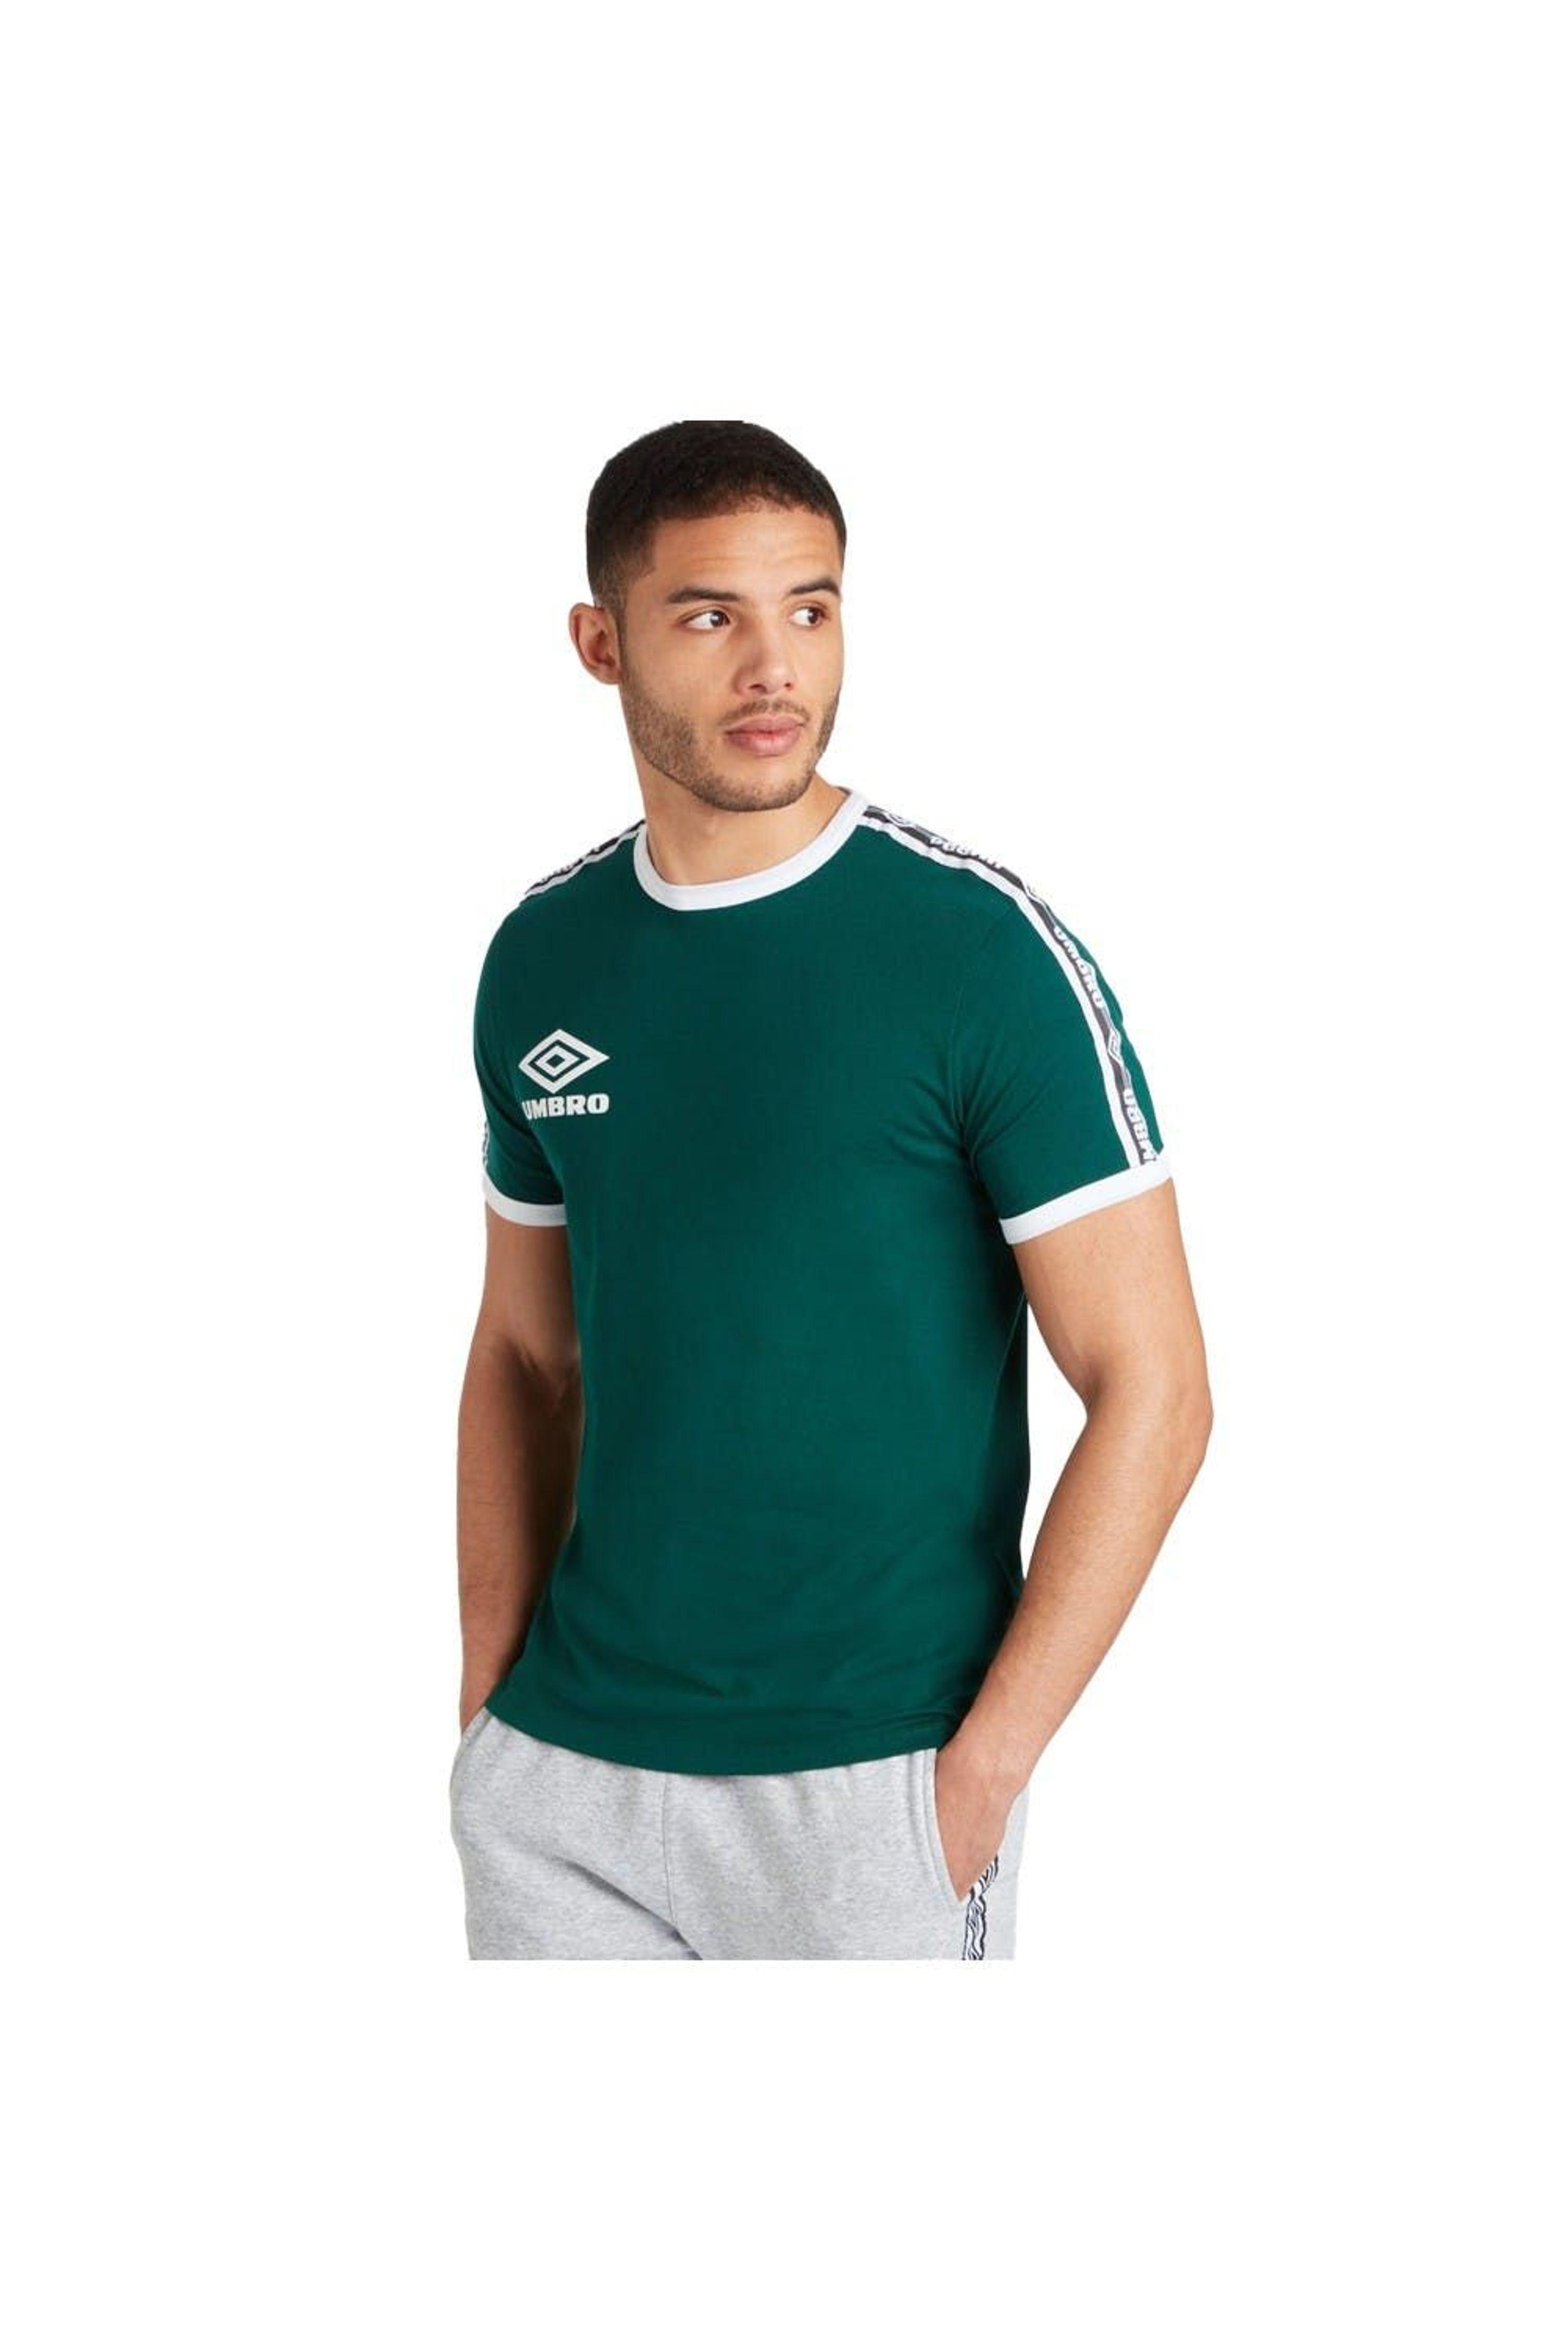 Umbro Ringer T-shirt in Green for Men | Lyst